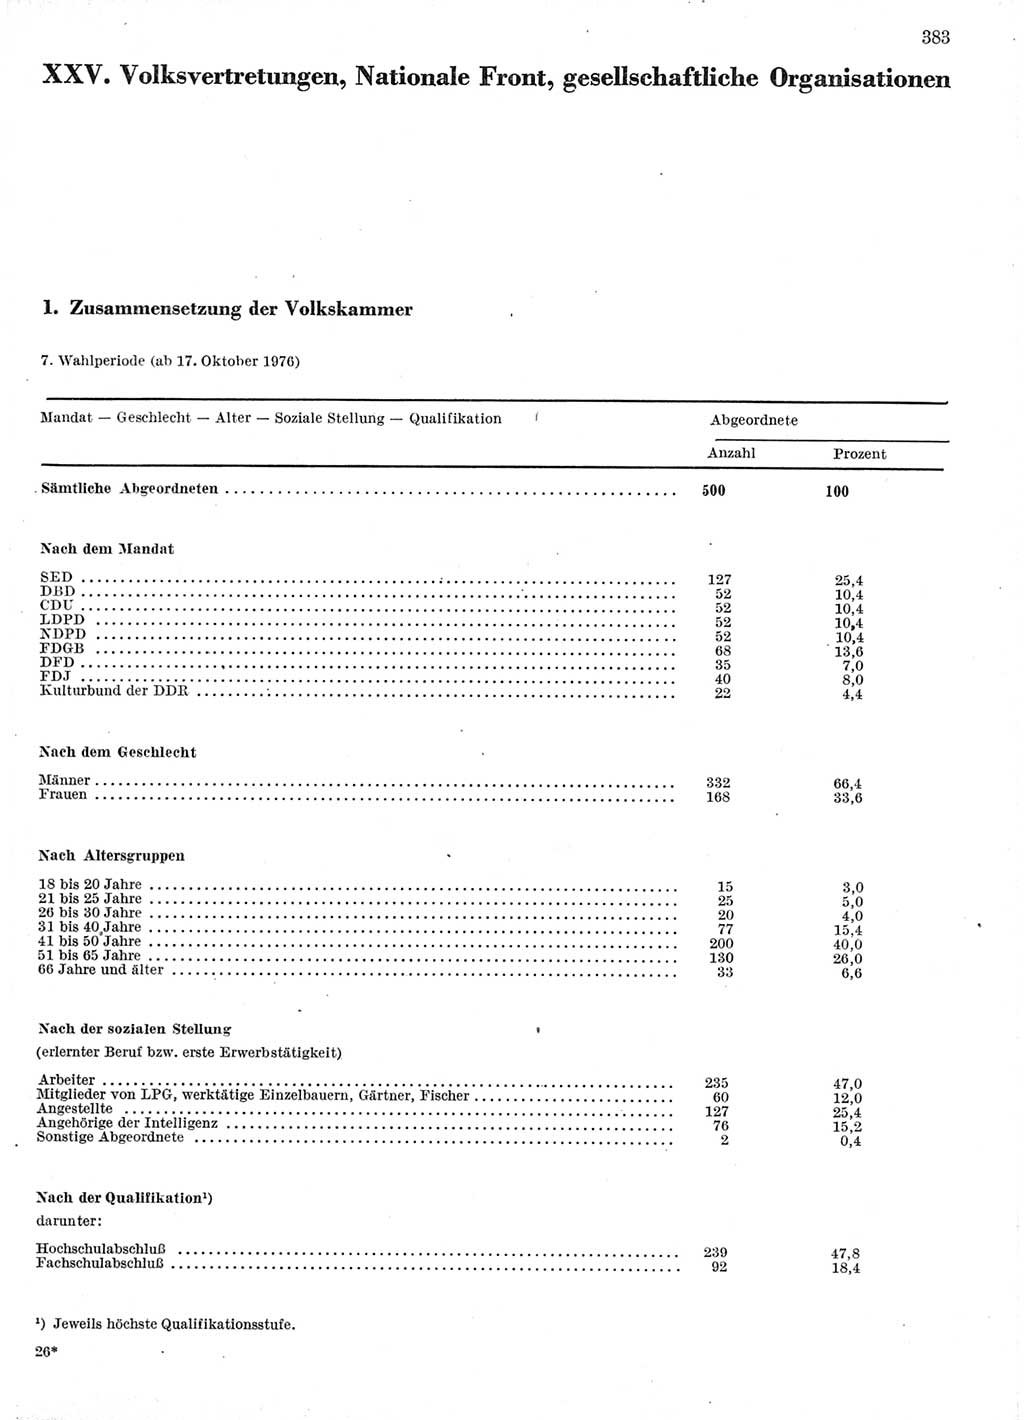 Statistisches Jahrbuch der Deutschen Demokratischen Republik (DDR) 1978, Seite 383 (Stat. Jb. DDR 1978, S. 383)